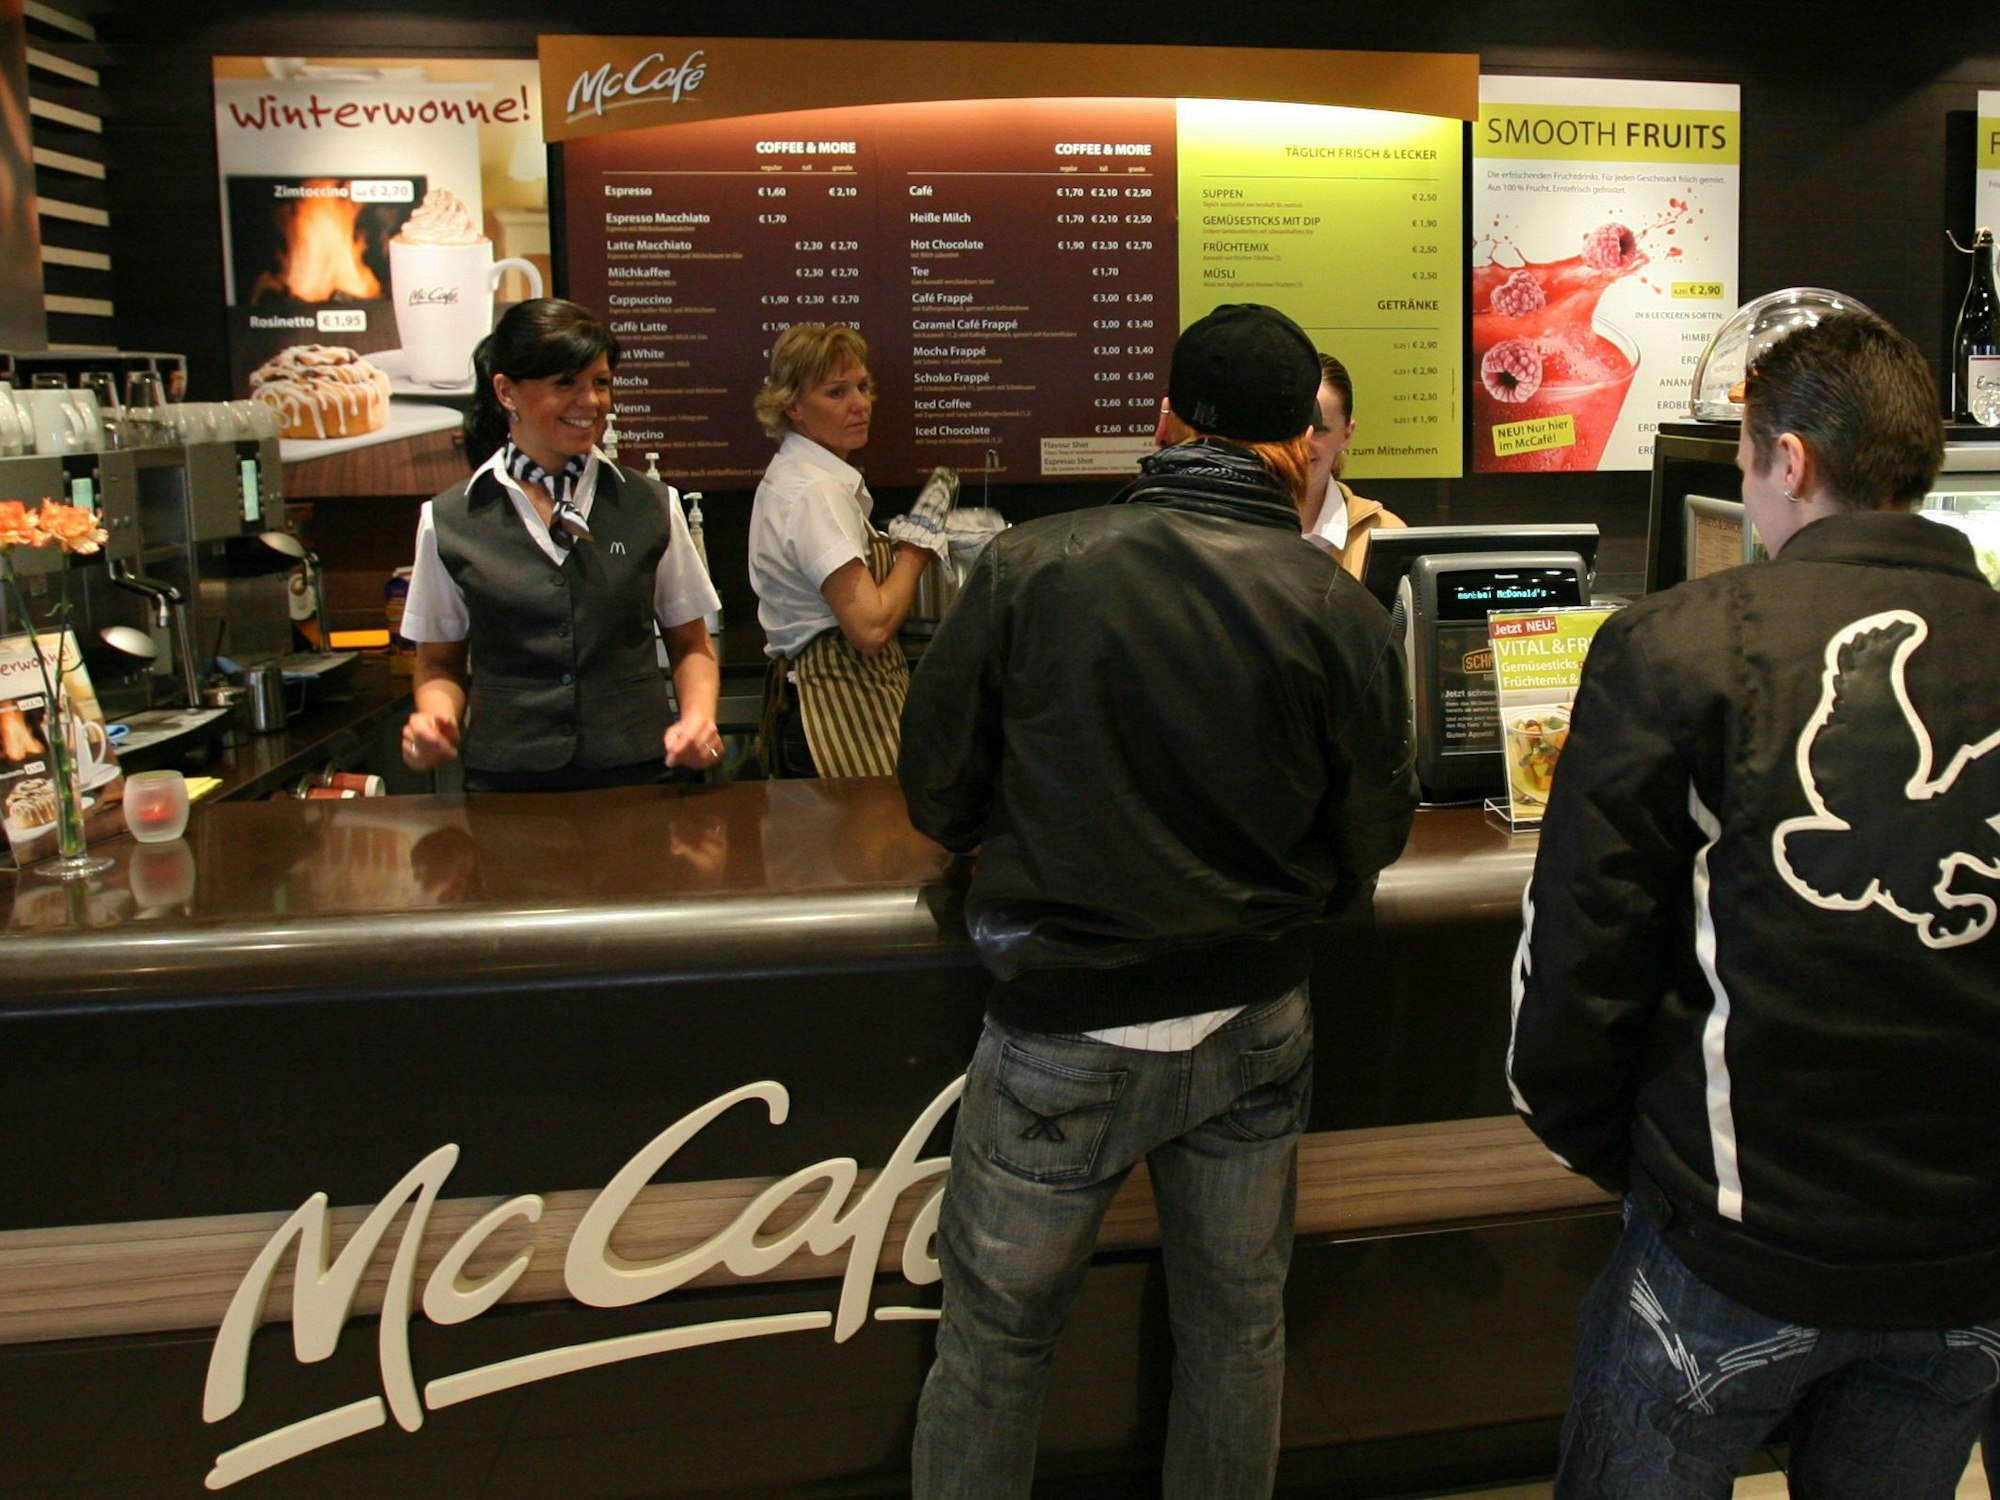 Kundinnen und Kunden stehen am 27.02.2008 in Kirchheim bei München (Oberbayern) in einer McDonald's-Filiale vor der McCafe-Theke. Das Foto wurde im Februar 2008 aufgenommen.